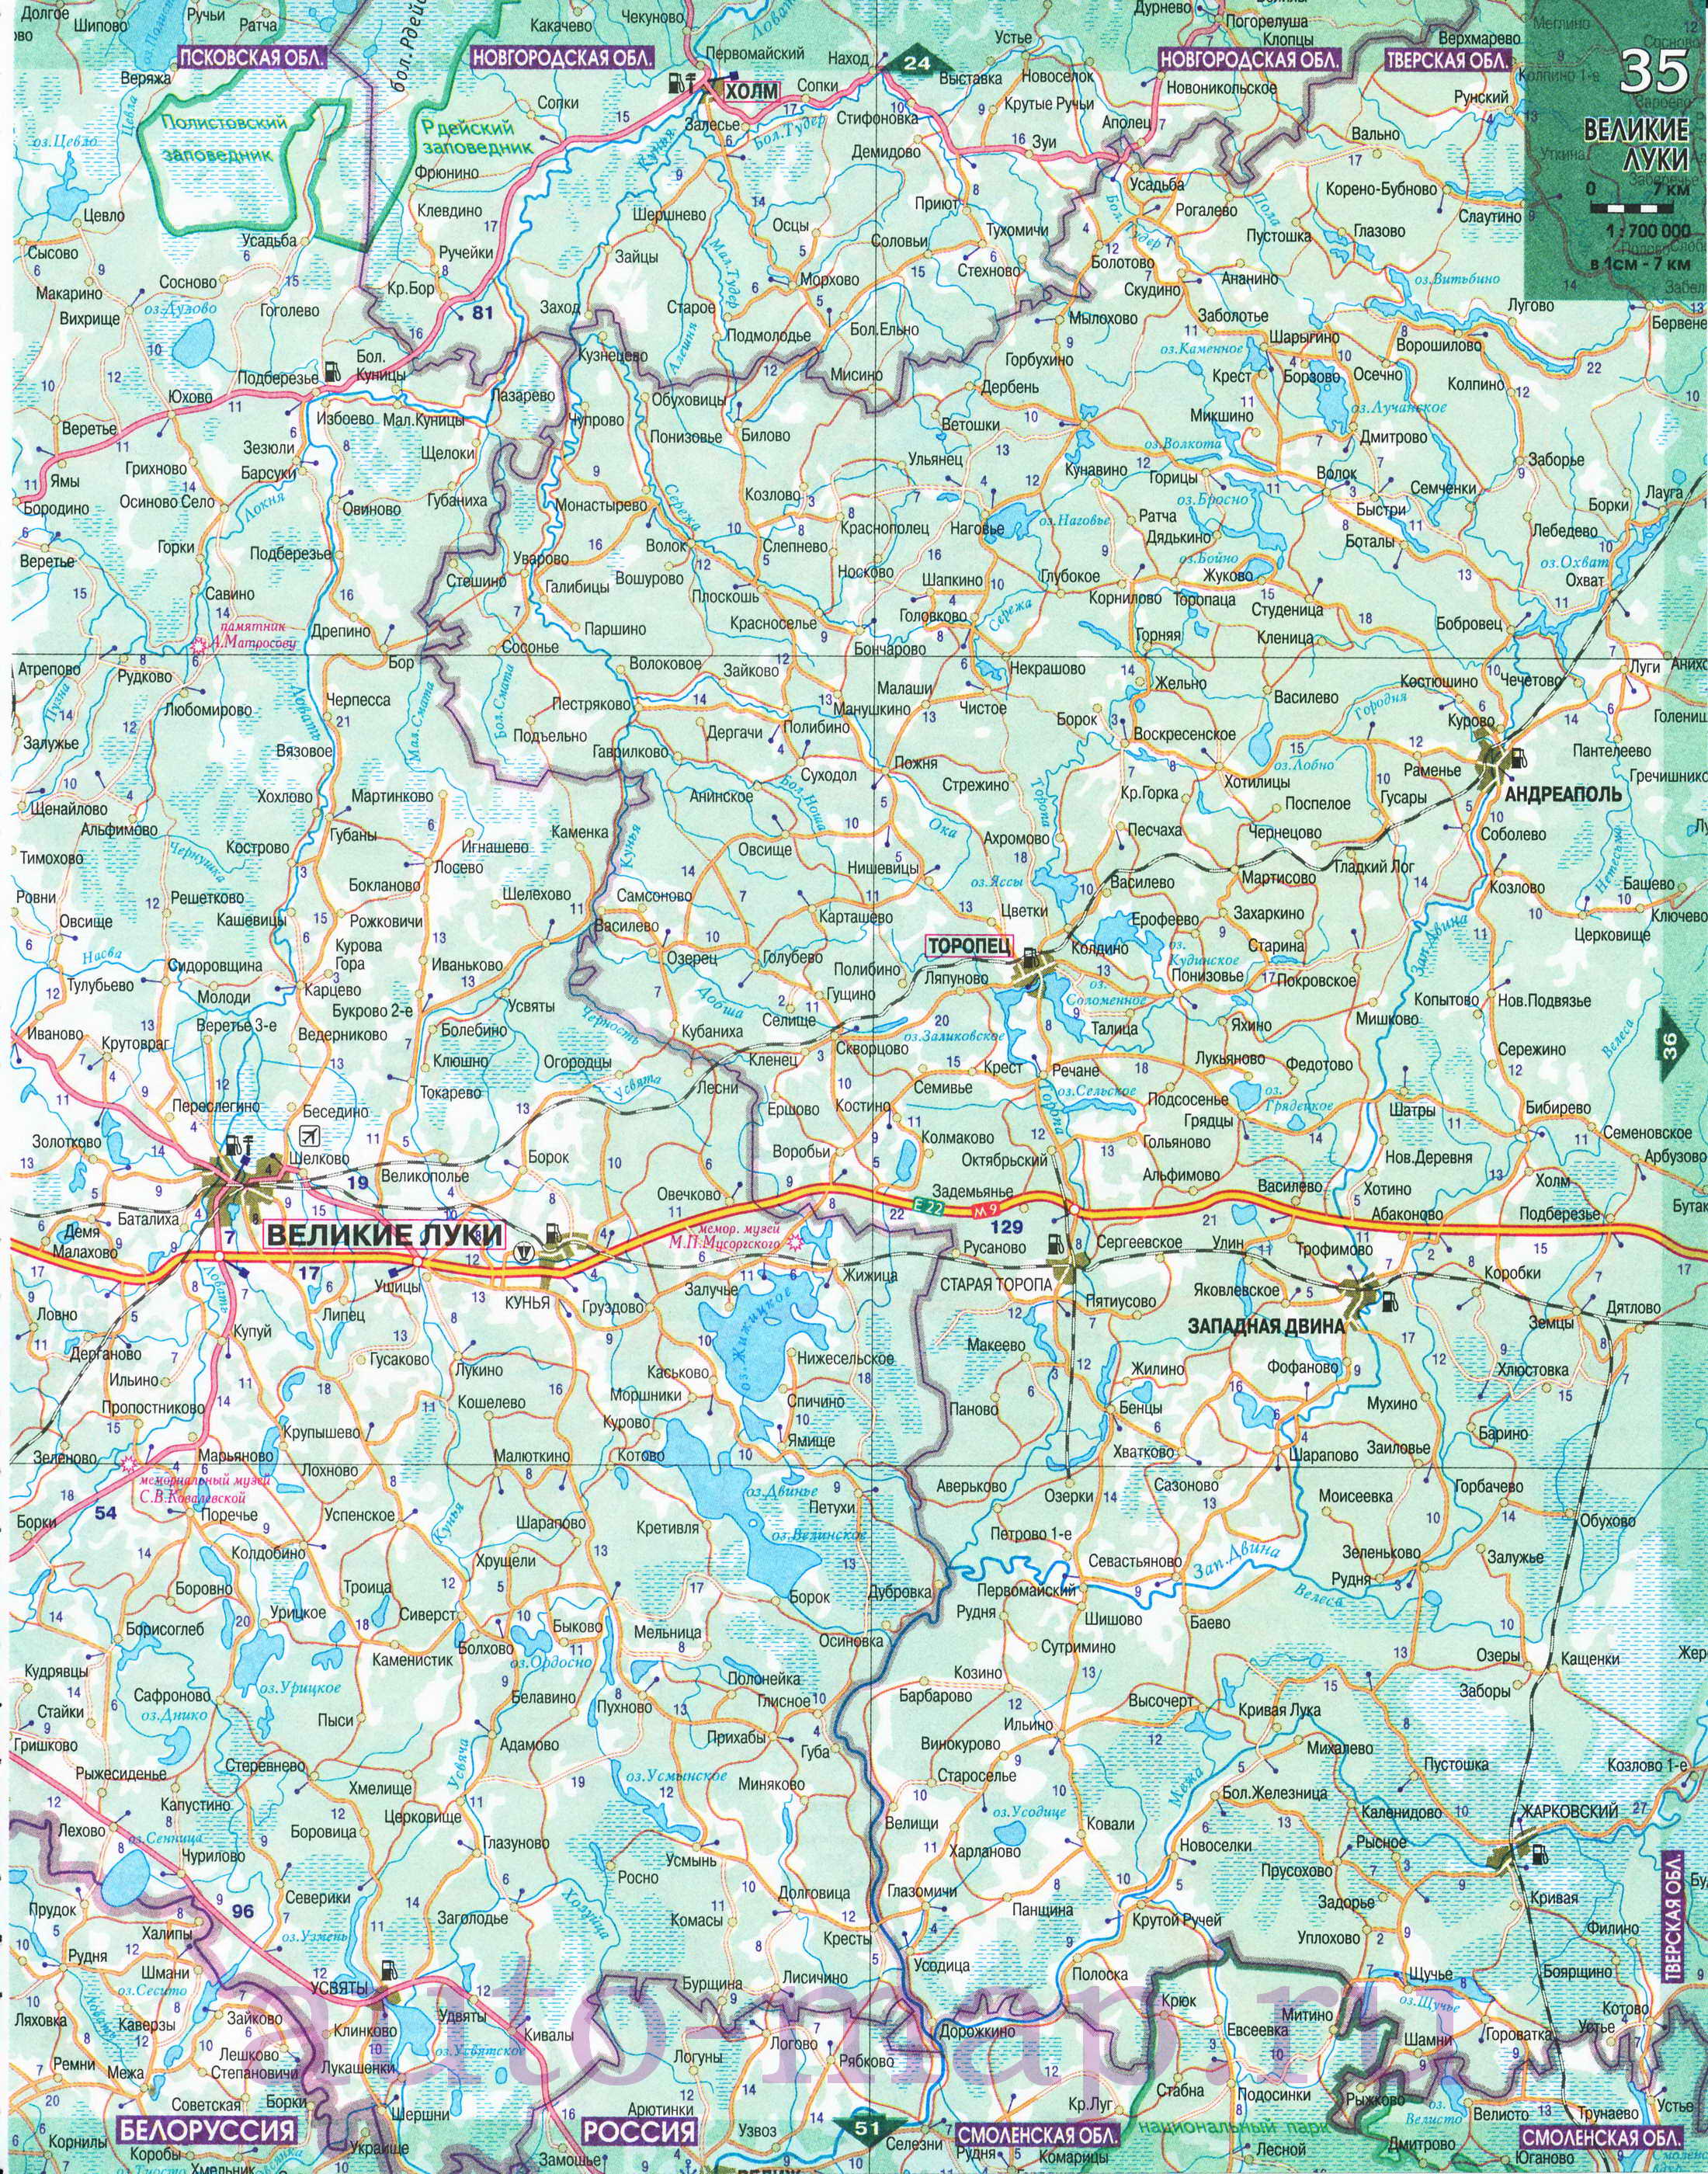 Карта Северо-Западного региона России. Подробная крупномасштабная карта автодорог Северо-Запада России, C2 - 